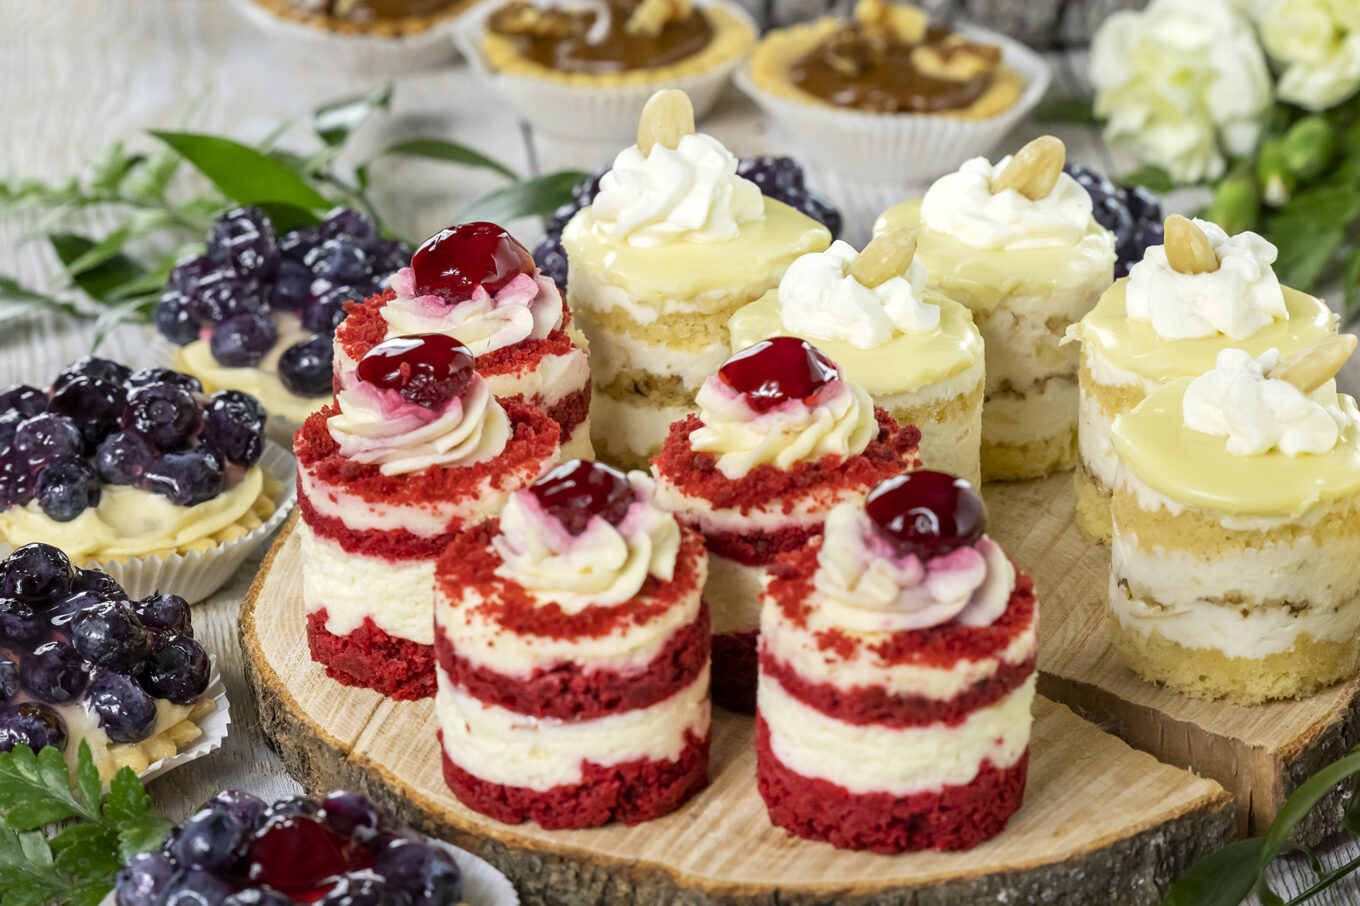 nano desery torciki Cukiernia Jacek Placek to synonim smaku domowych ciast z naturalnych produktów.